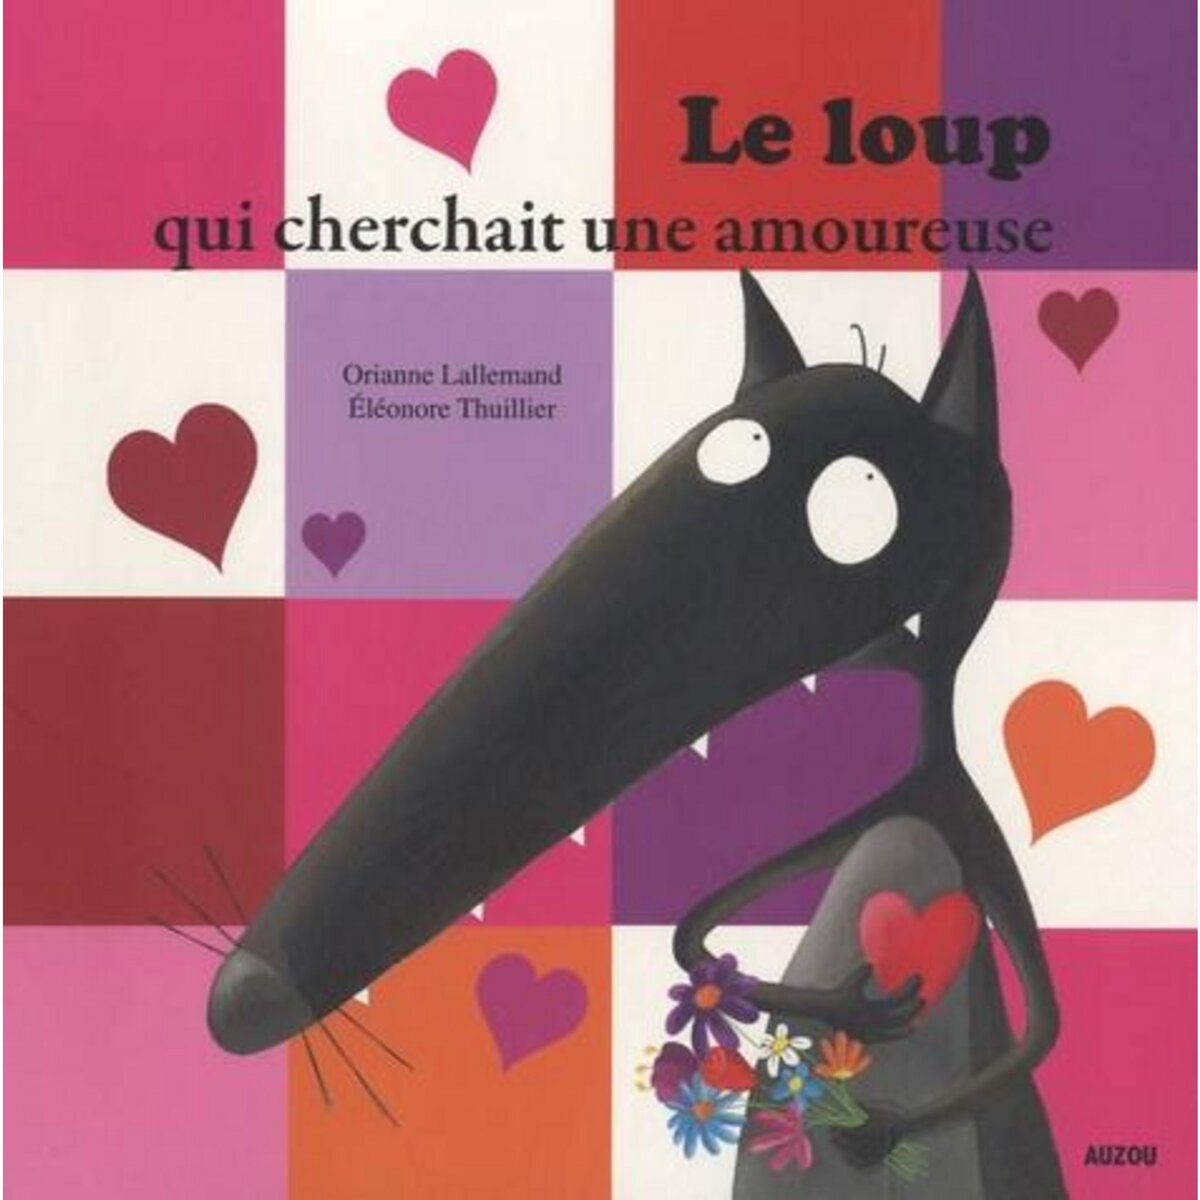 Le Loup qui apprivoisait ses émotions by Orianne Lallemand